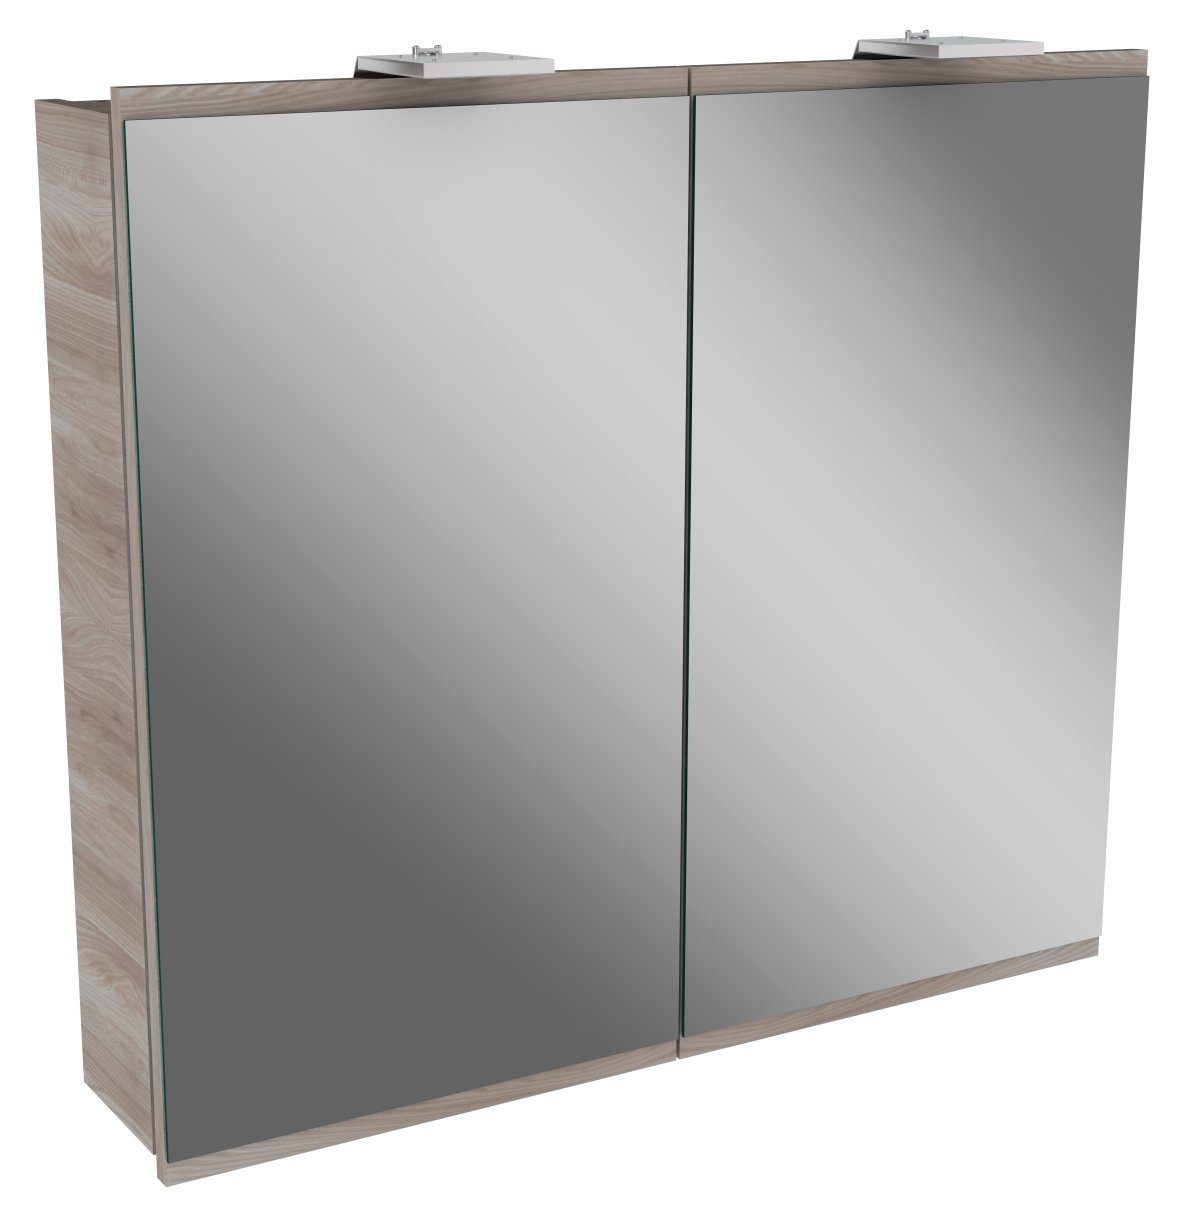 FACKELMANN Badezimmerspiegelschrank FACKELMANN LED Spiegelschrank LIMA / Badschrank mit Soft-Close-System / Maße (B x H x T):